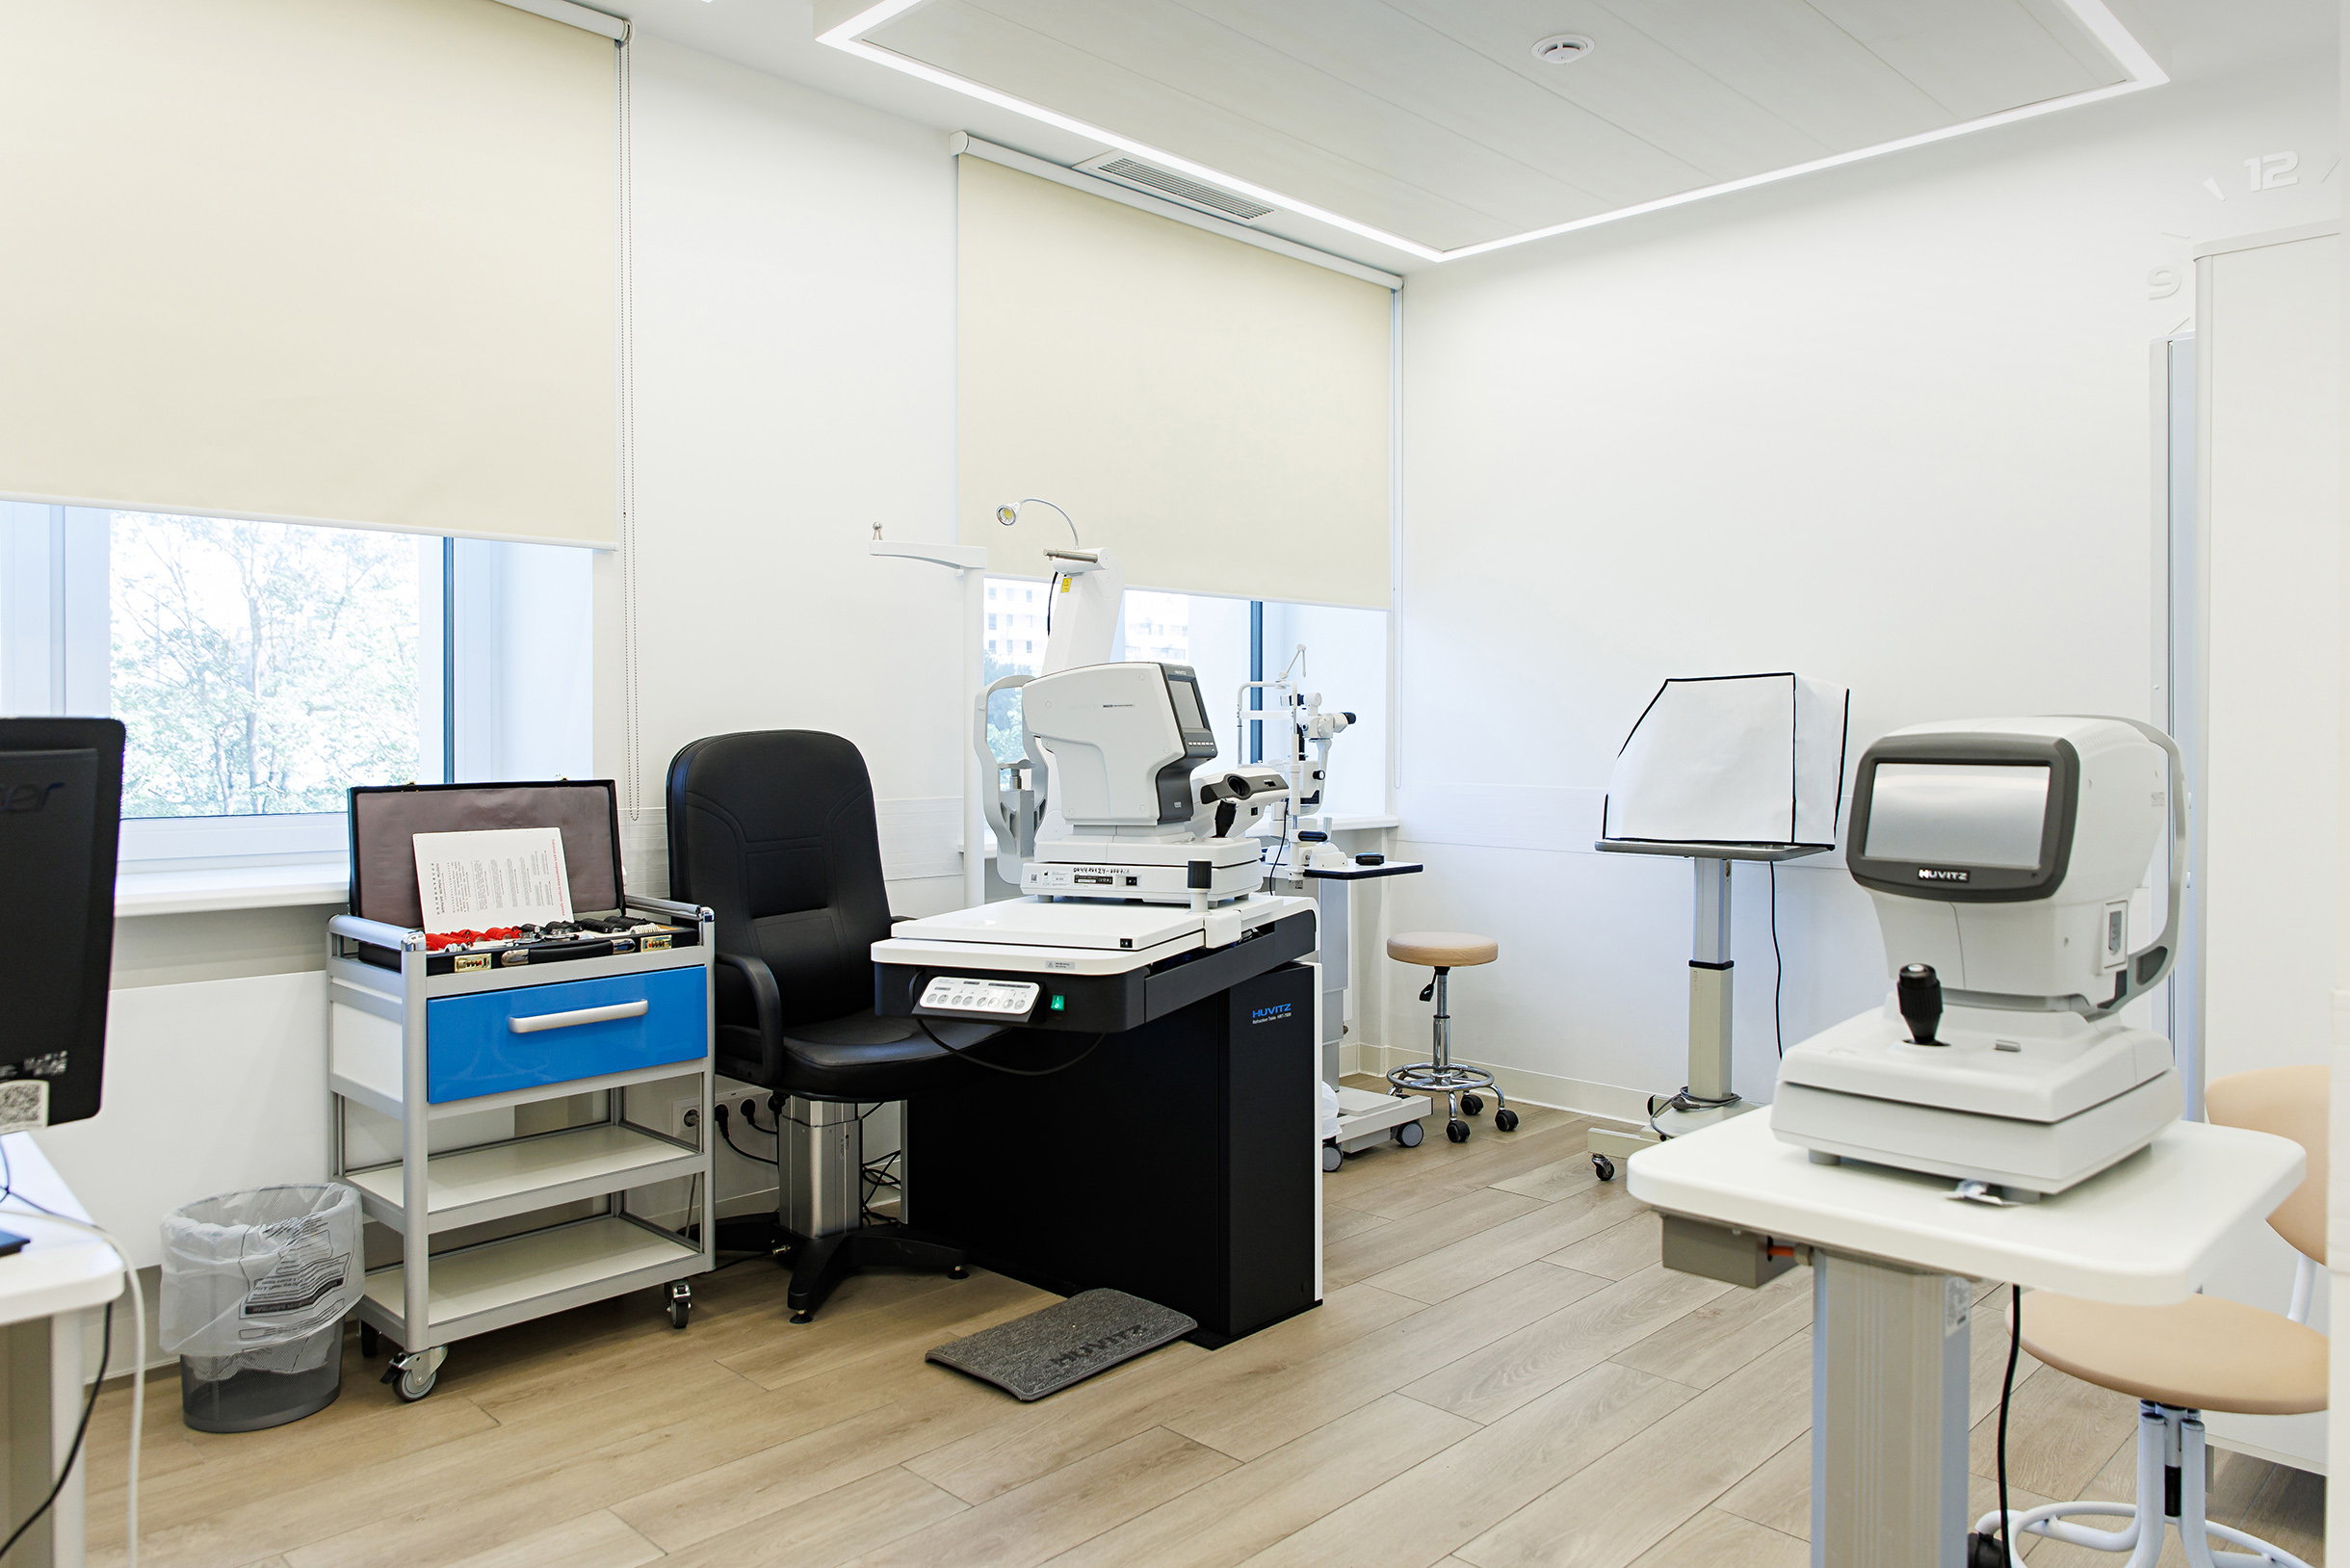 А это кабинет офтальмолога с набором аппаратуры для диагностики